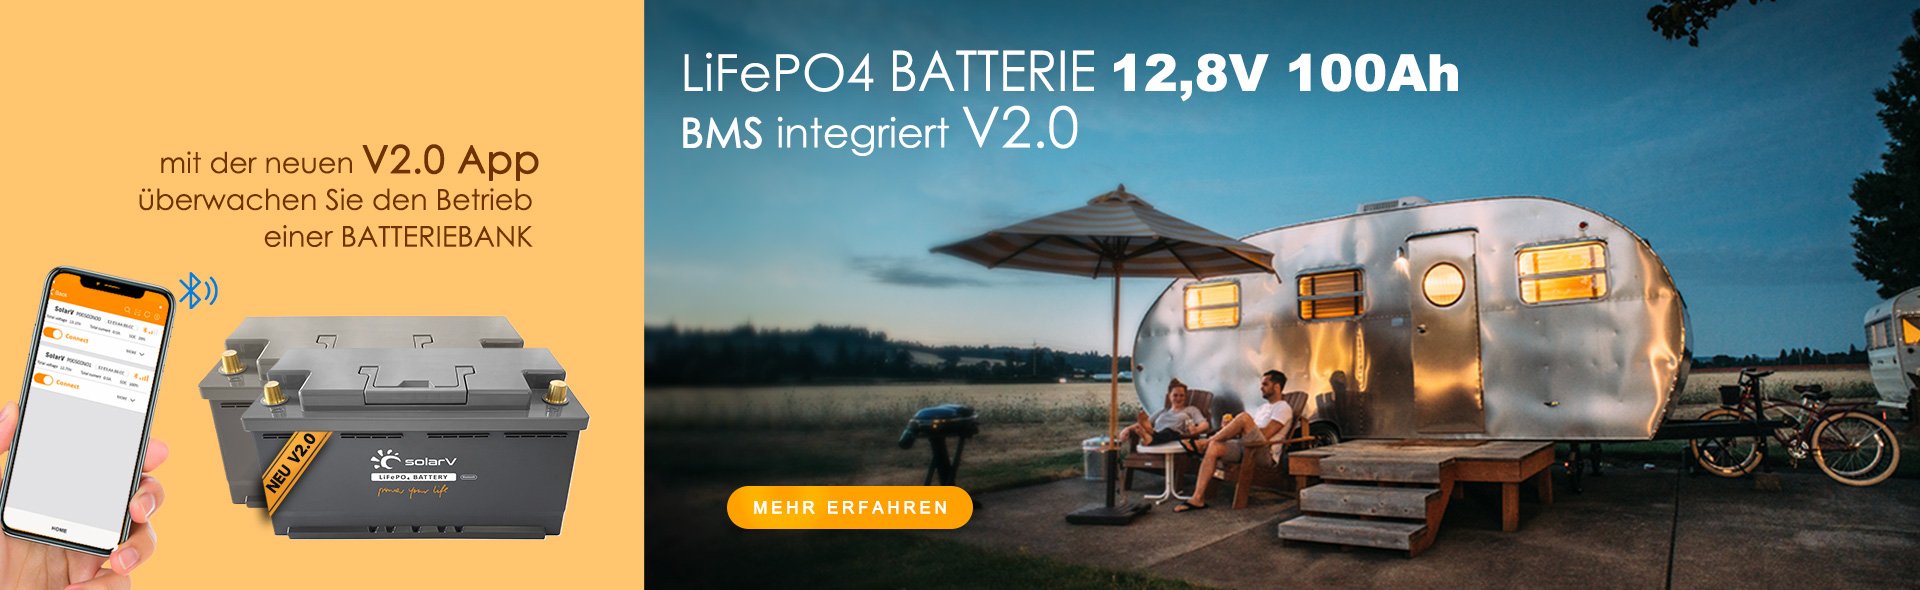 Neue SolarV Batterie 12V 100Ah. Mit BMS (Batterie Management System) via Bluetooth und App bequem von Ihrem Smartphone